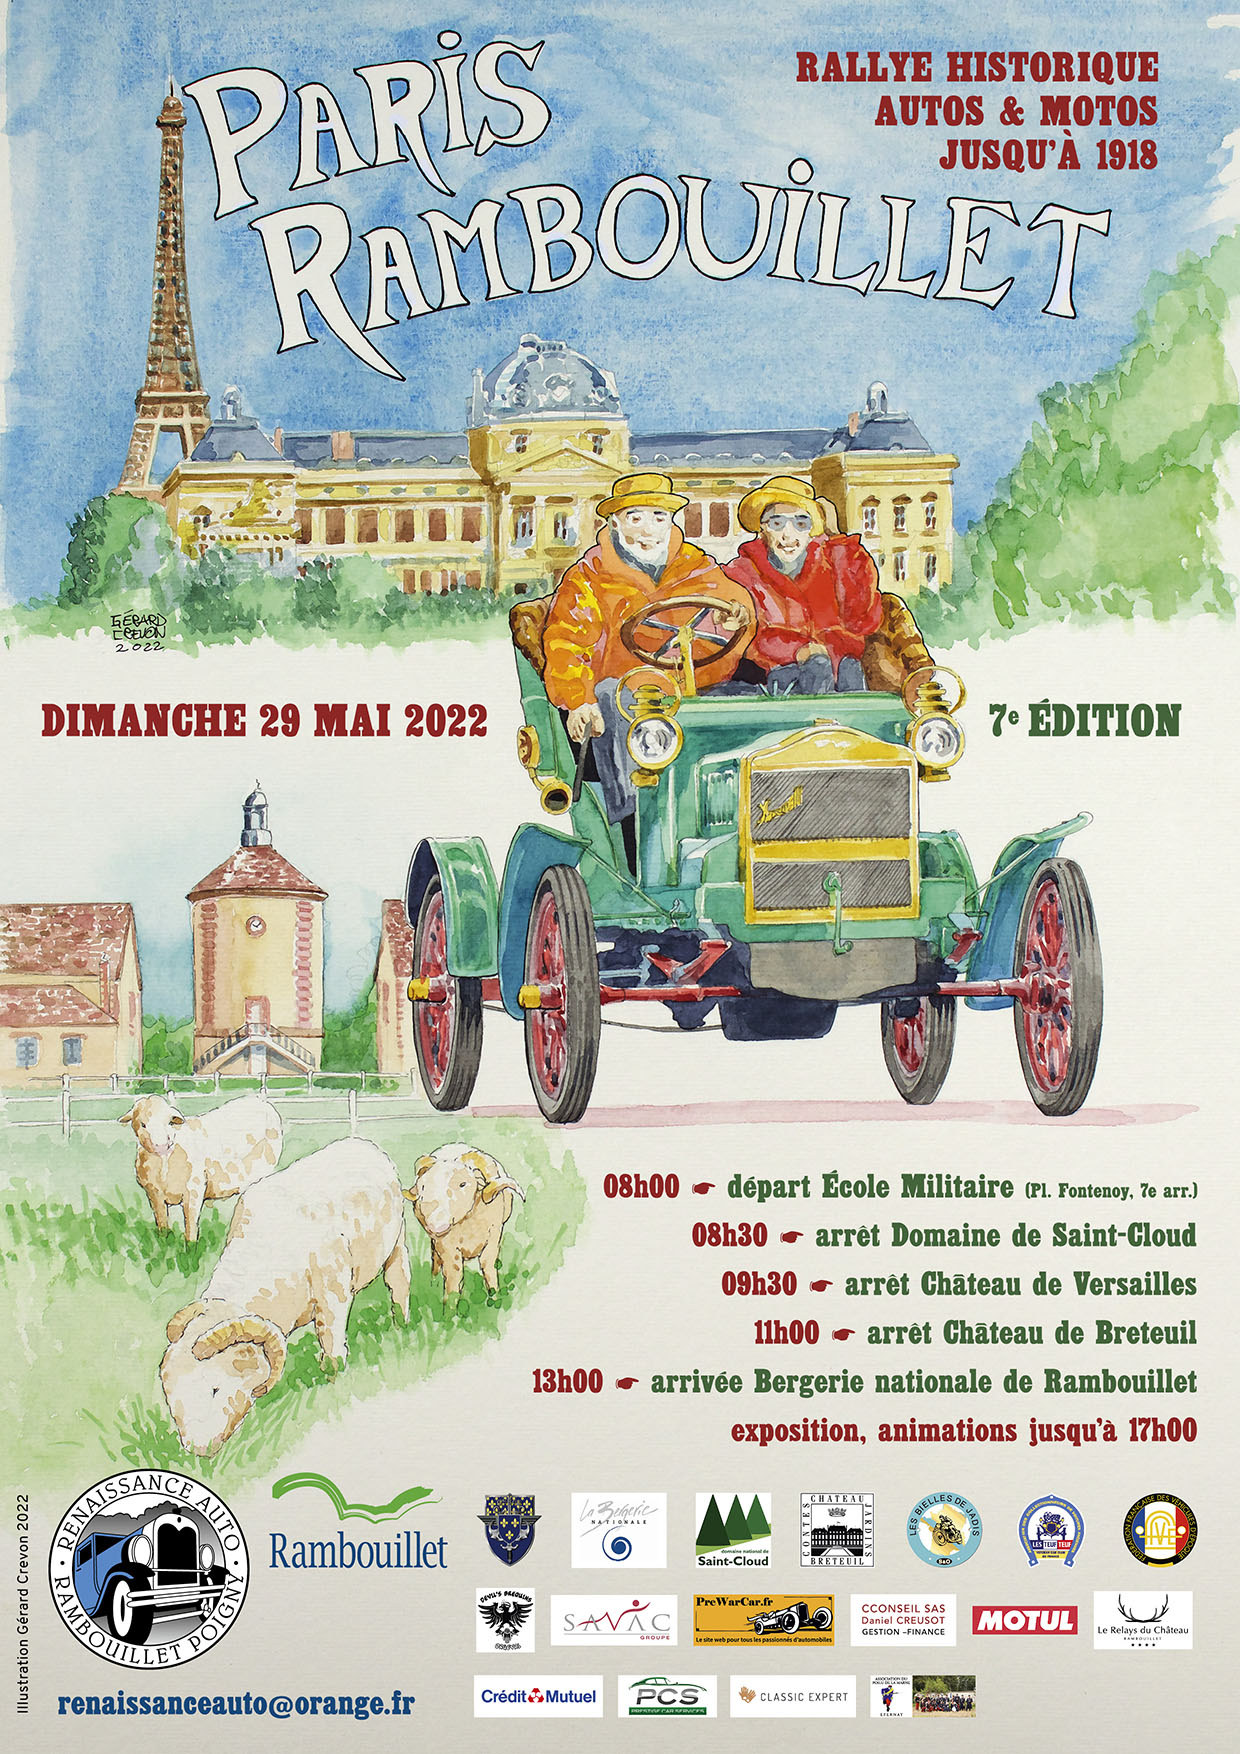 Départ du Rallye Paris Rambouillet